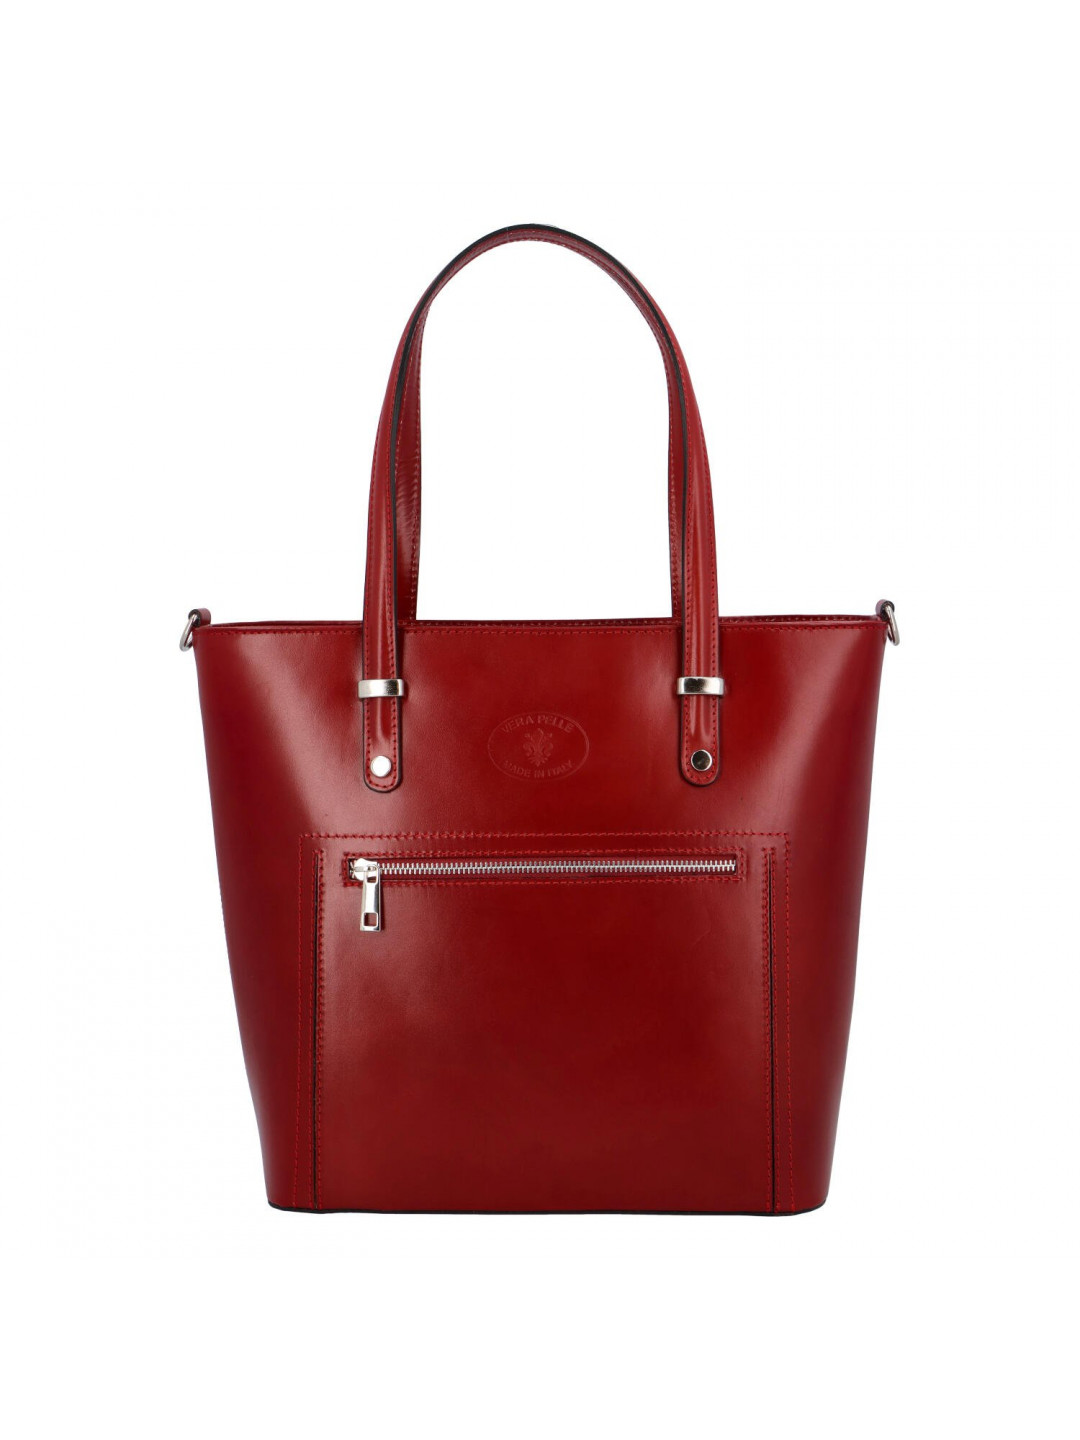 Dámská kožená kabelka tmavě červená – Delami Andrea